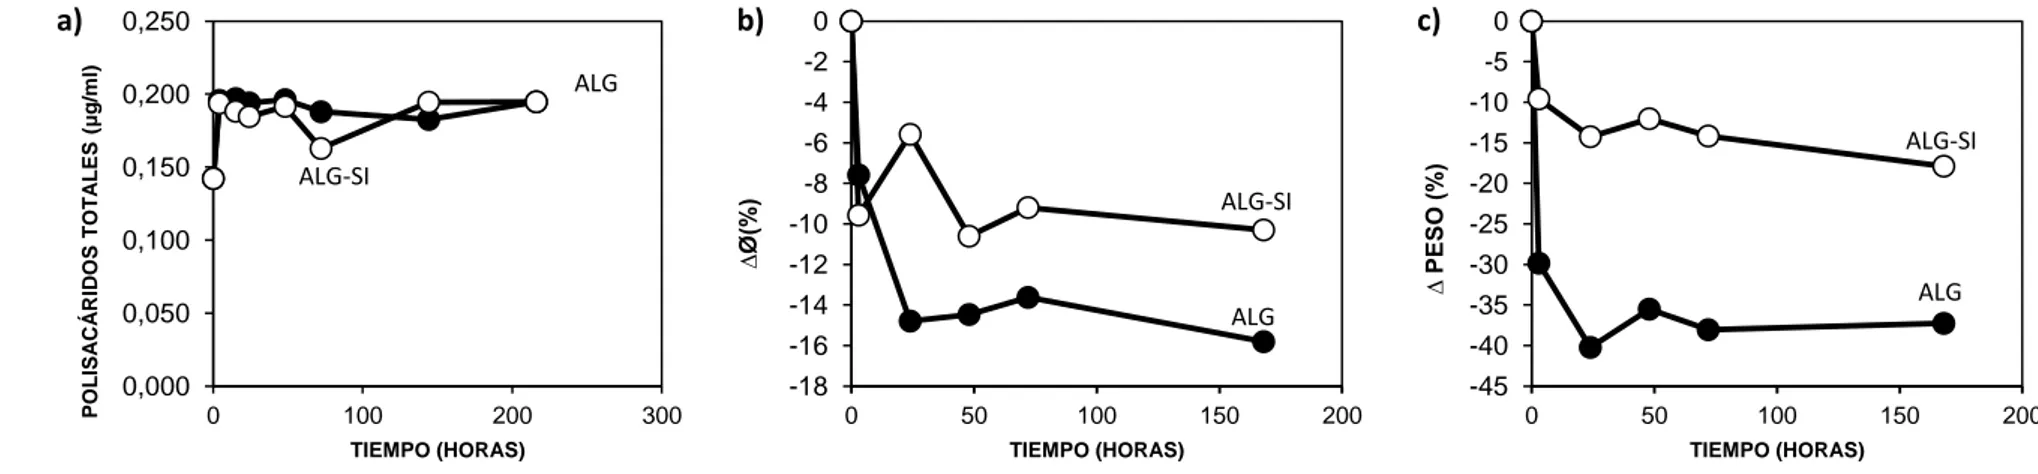 Figura 2. Evolución en el tiempo de la  a) concentración de polisacáridos totales (μg/ml alginato de sodio), b) ∆Ø (diámetro del soporte expresado en incremento  porcentual (%)), y c) ∆ PESO (peso del soporte expresado en incremento porcentual (%)) para so